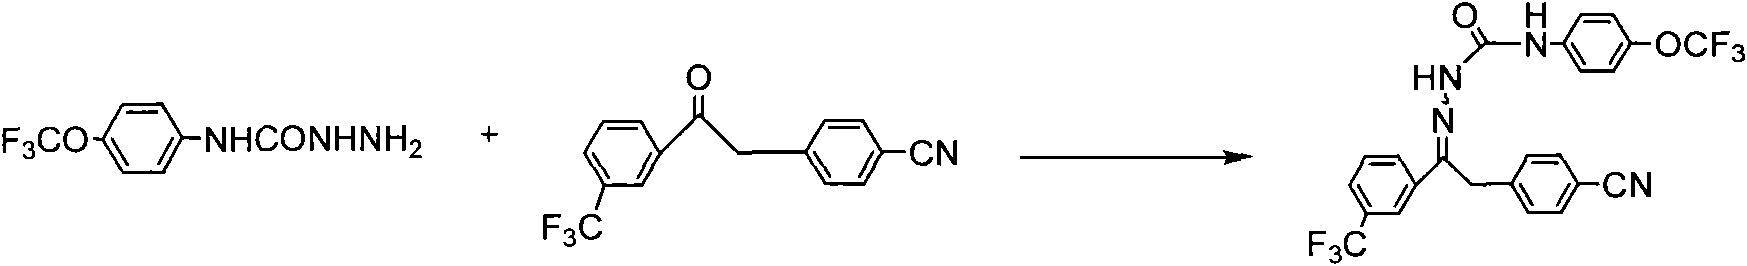 Metaflumizone synthesis method